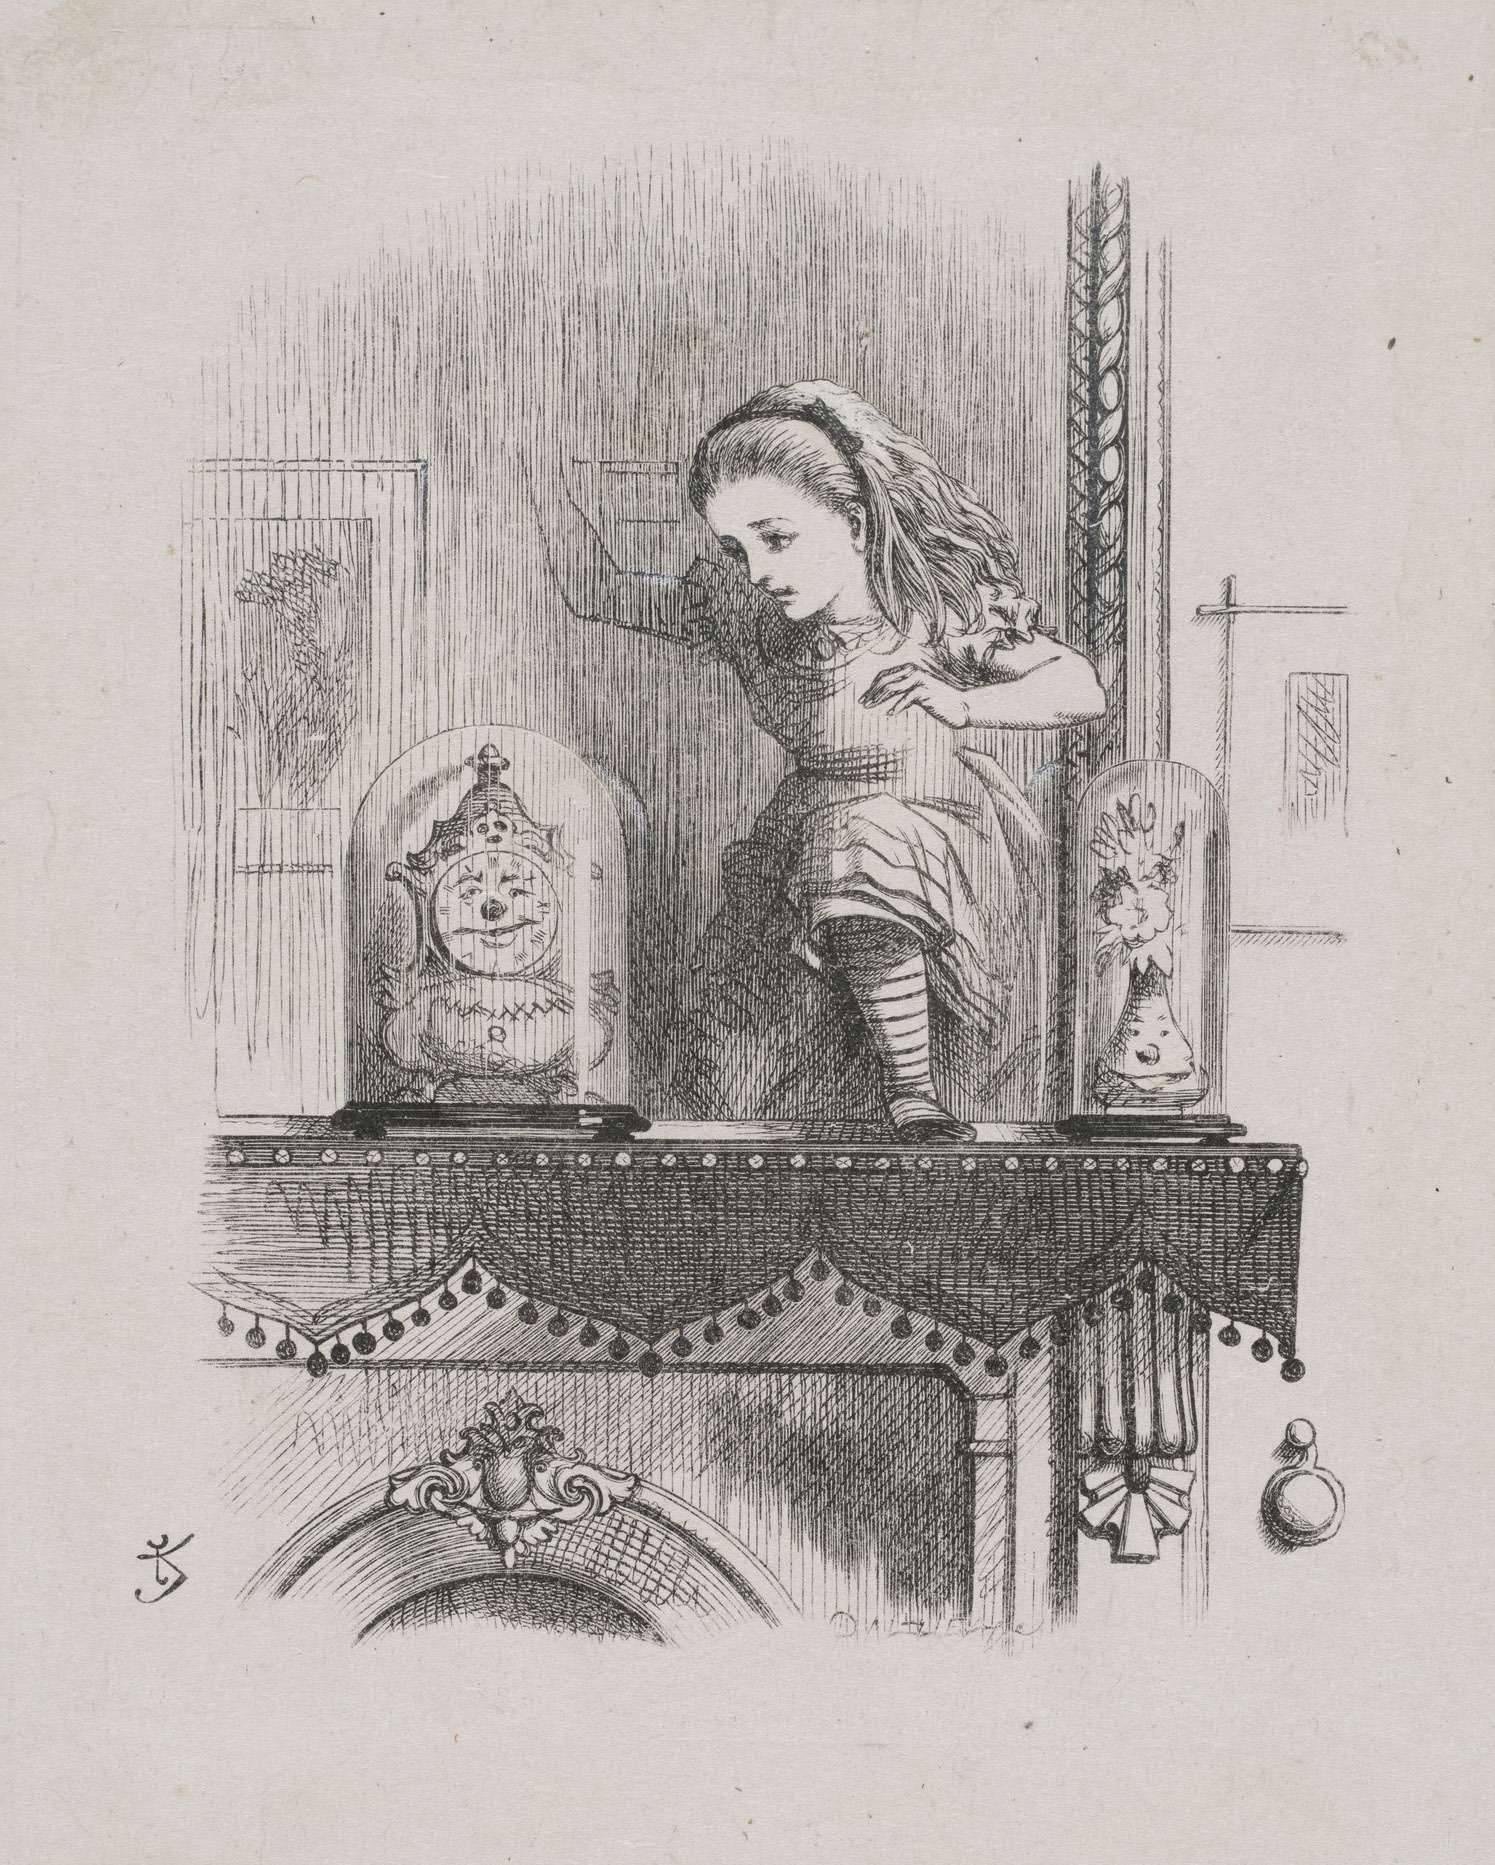 融け始めた鏡を通り抜けるアリス、『鏡の国のアリス』より、ジョン・テニエル画、ダルジール兄弟彫版、木版画、1871年、 (C)Victoria and Albert Museum, London